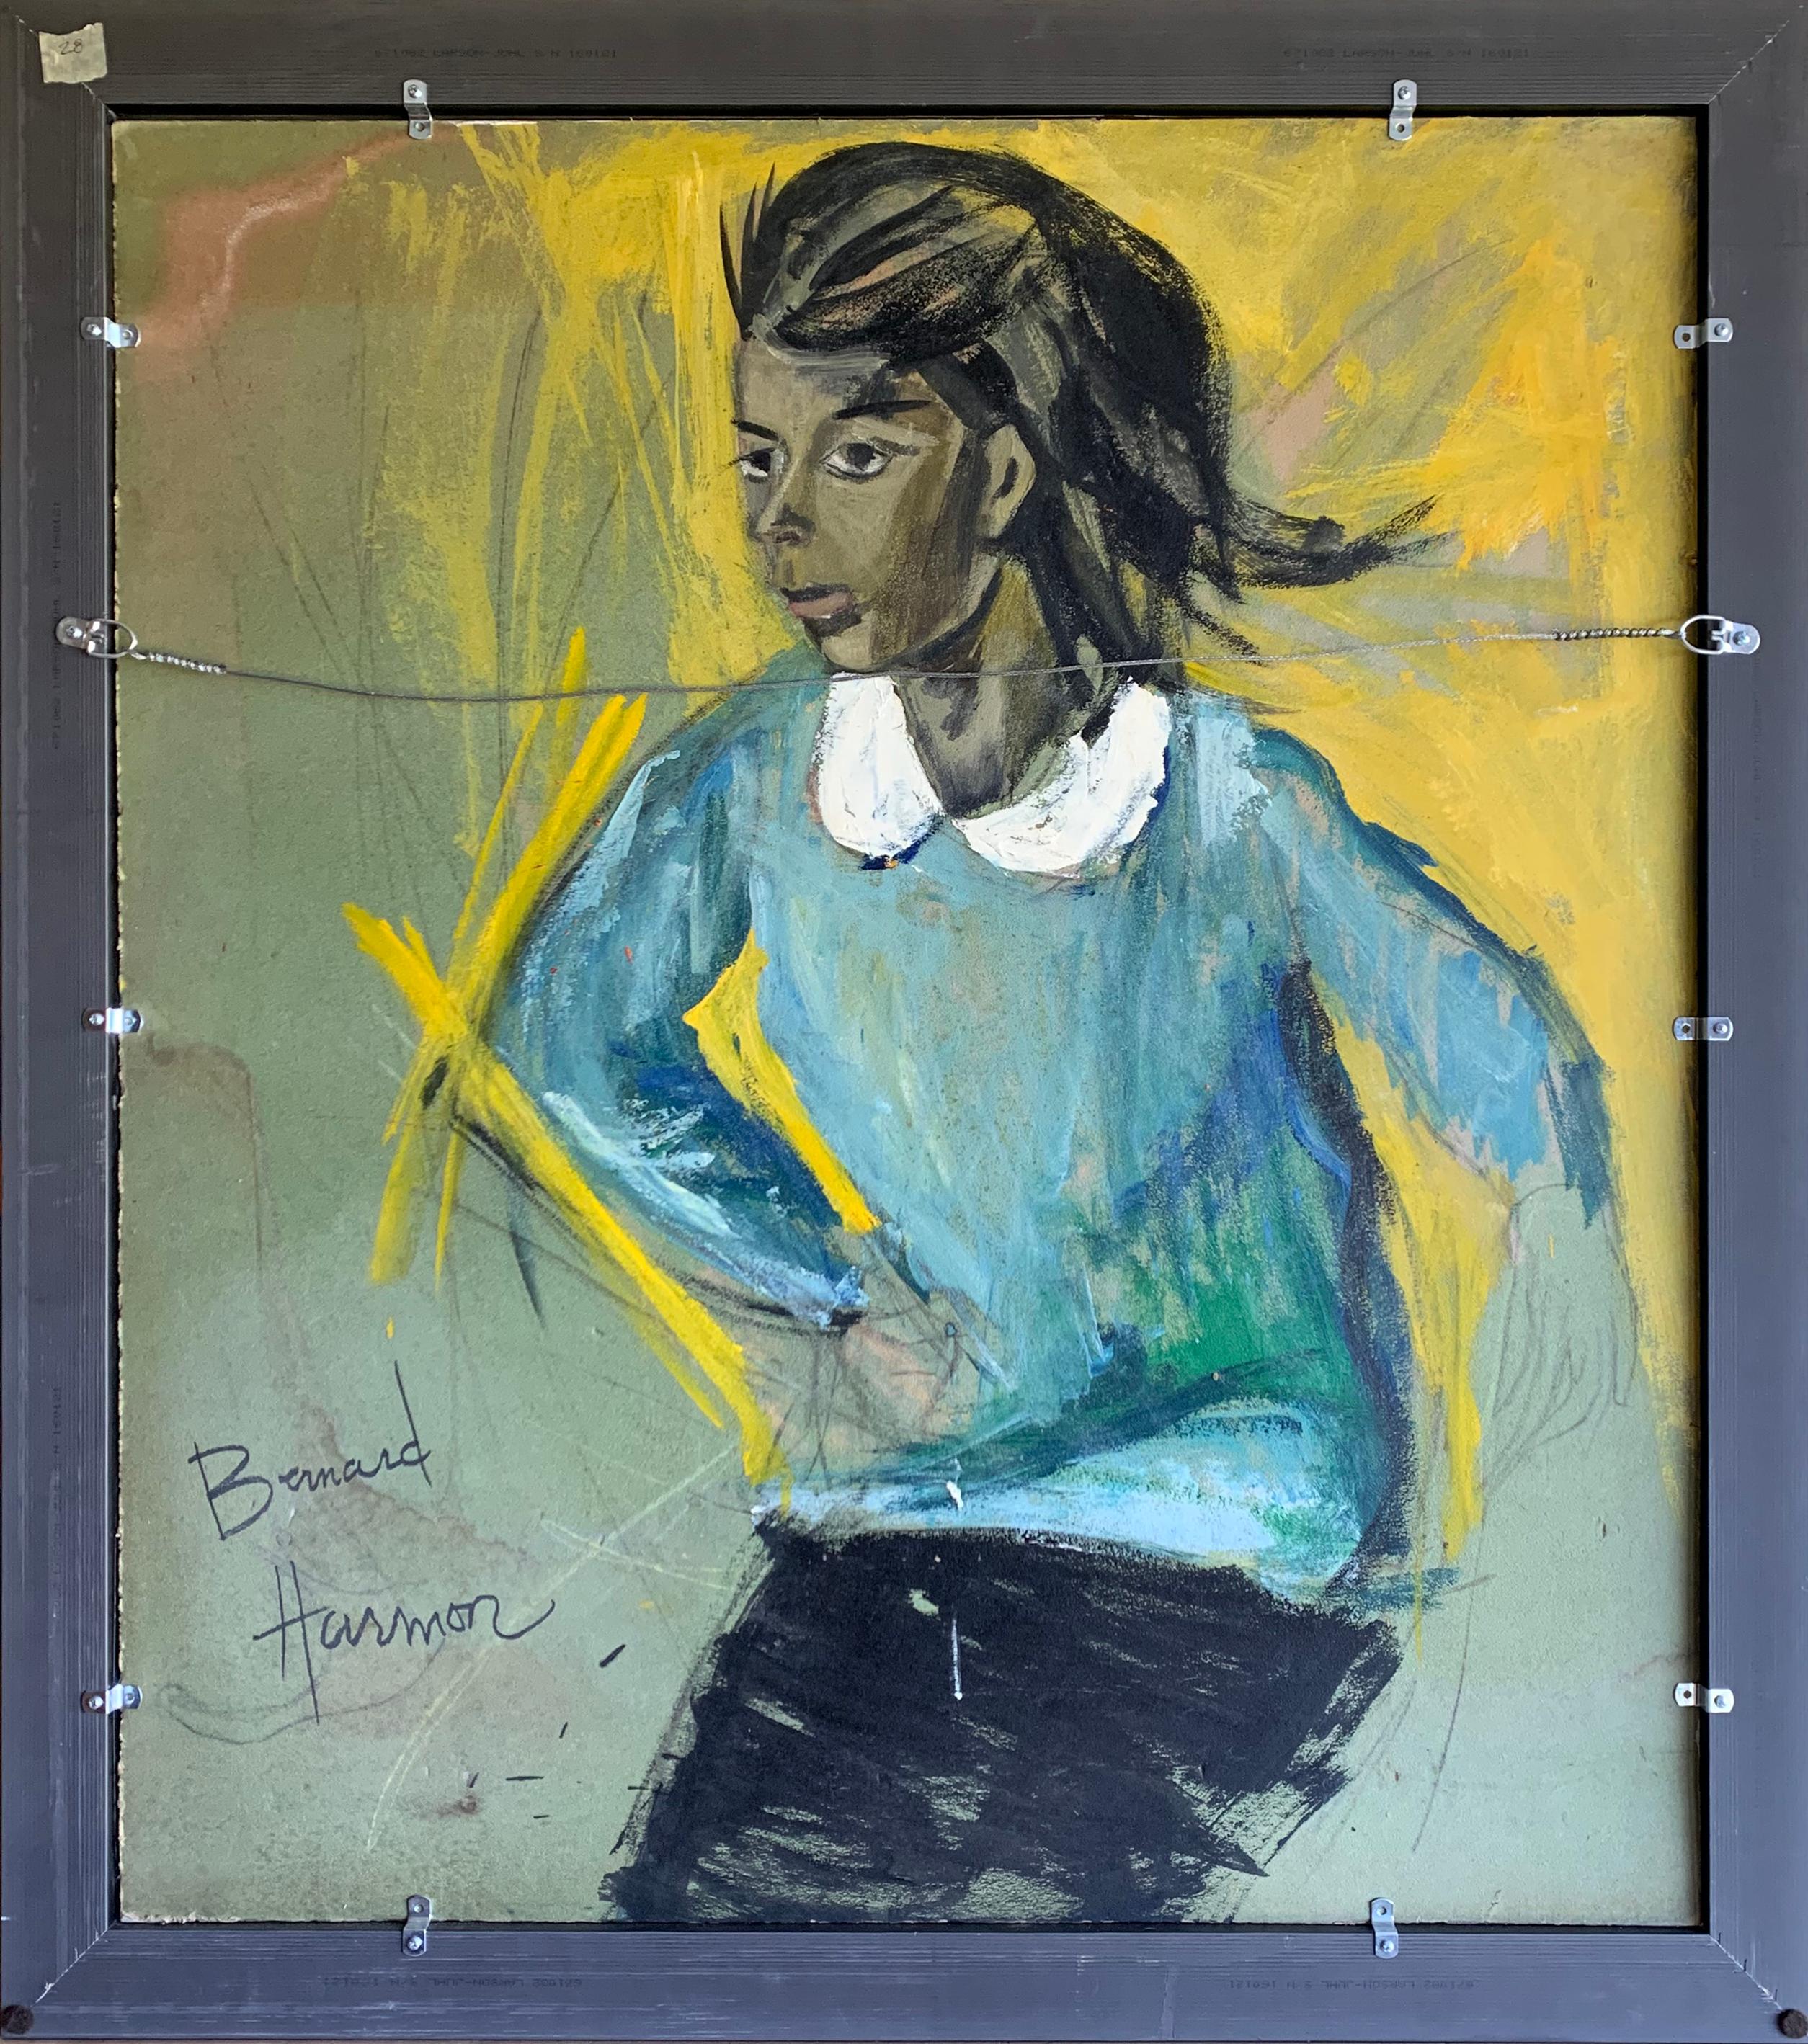 Mädchen mit Schleife im Haar, expressionistisches Porträt des Künstlers aus Philadelphia – Painting von Bernard Harmon